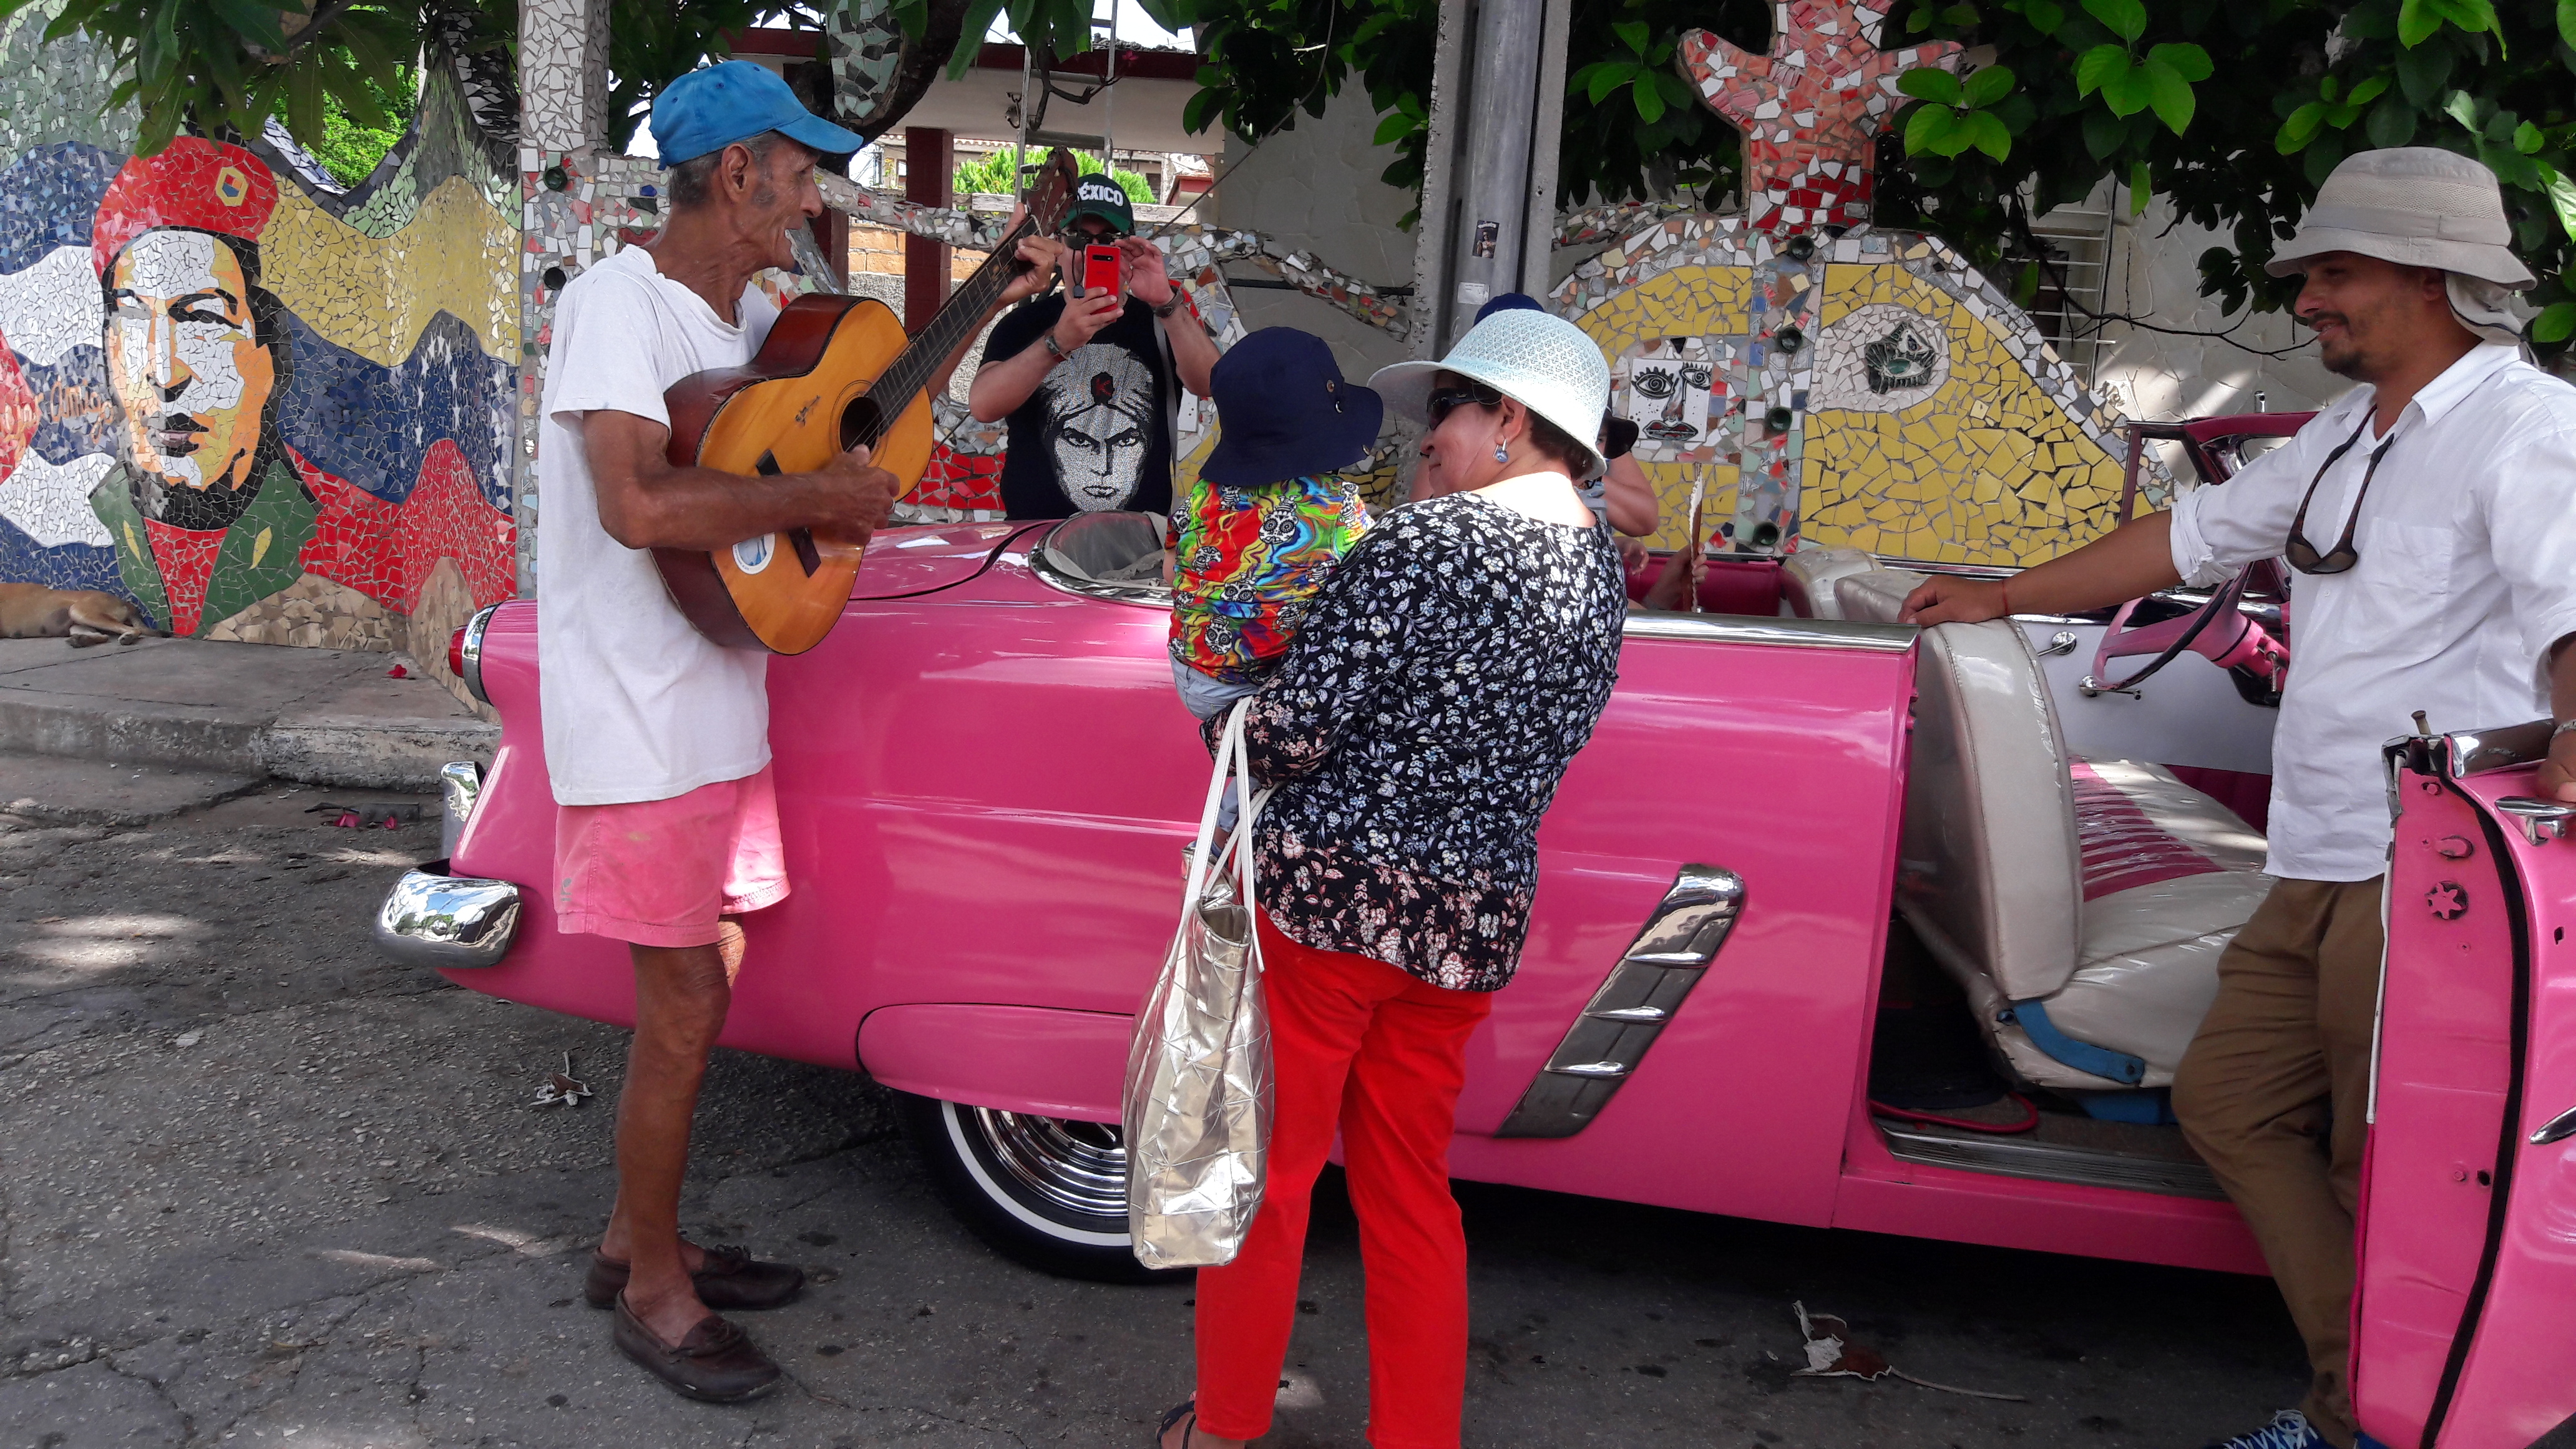 Lupe con su guitarra de tres cuerdas. /Foto: Francisco Correa. ADN CUBA